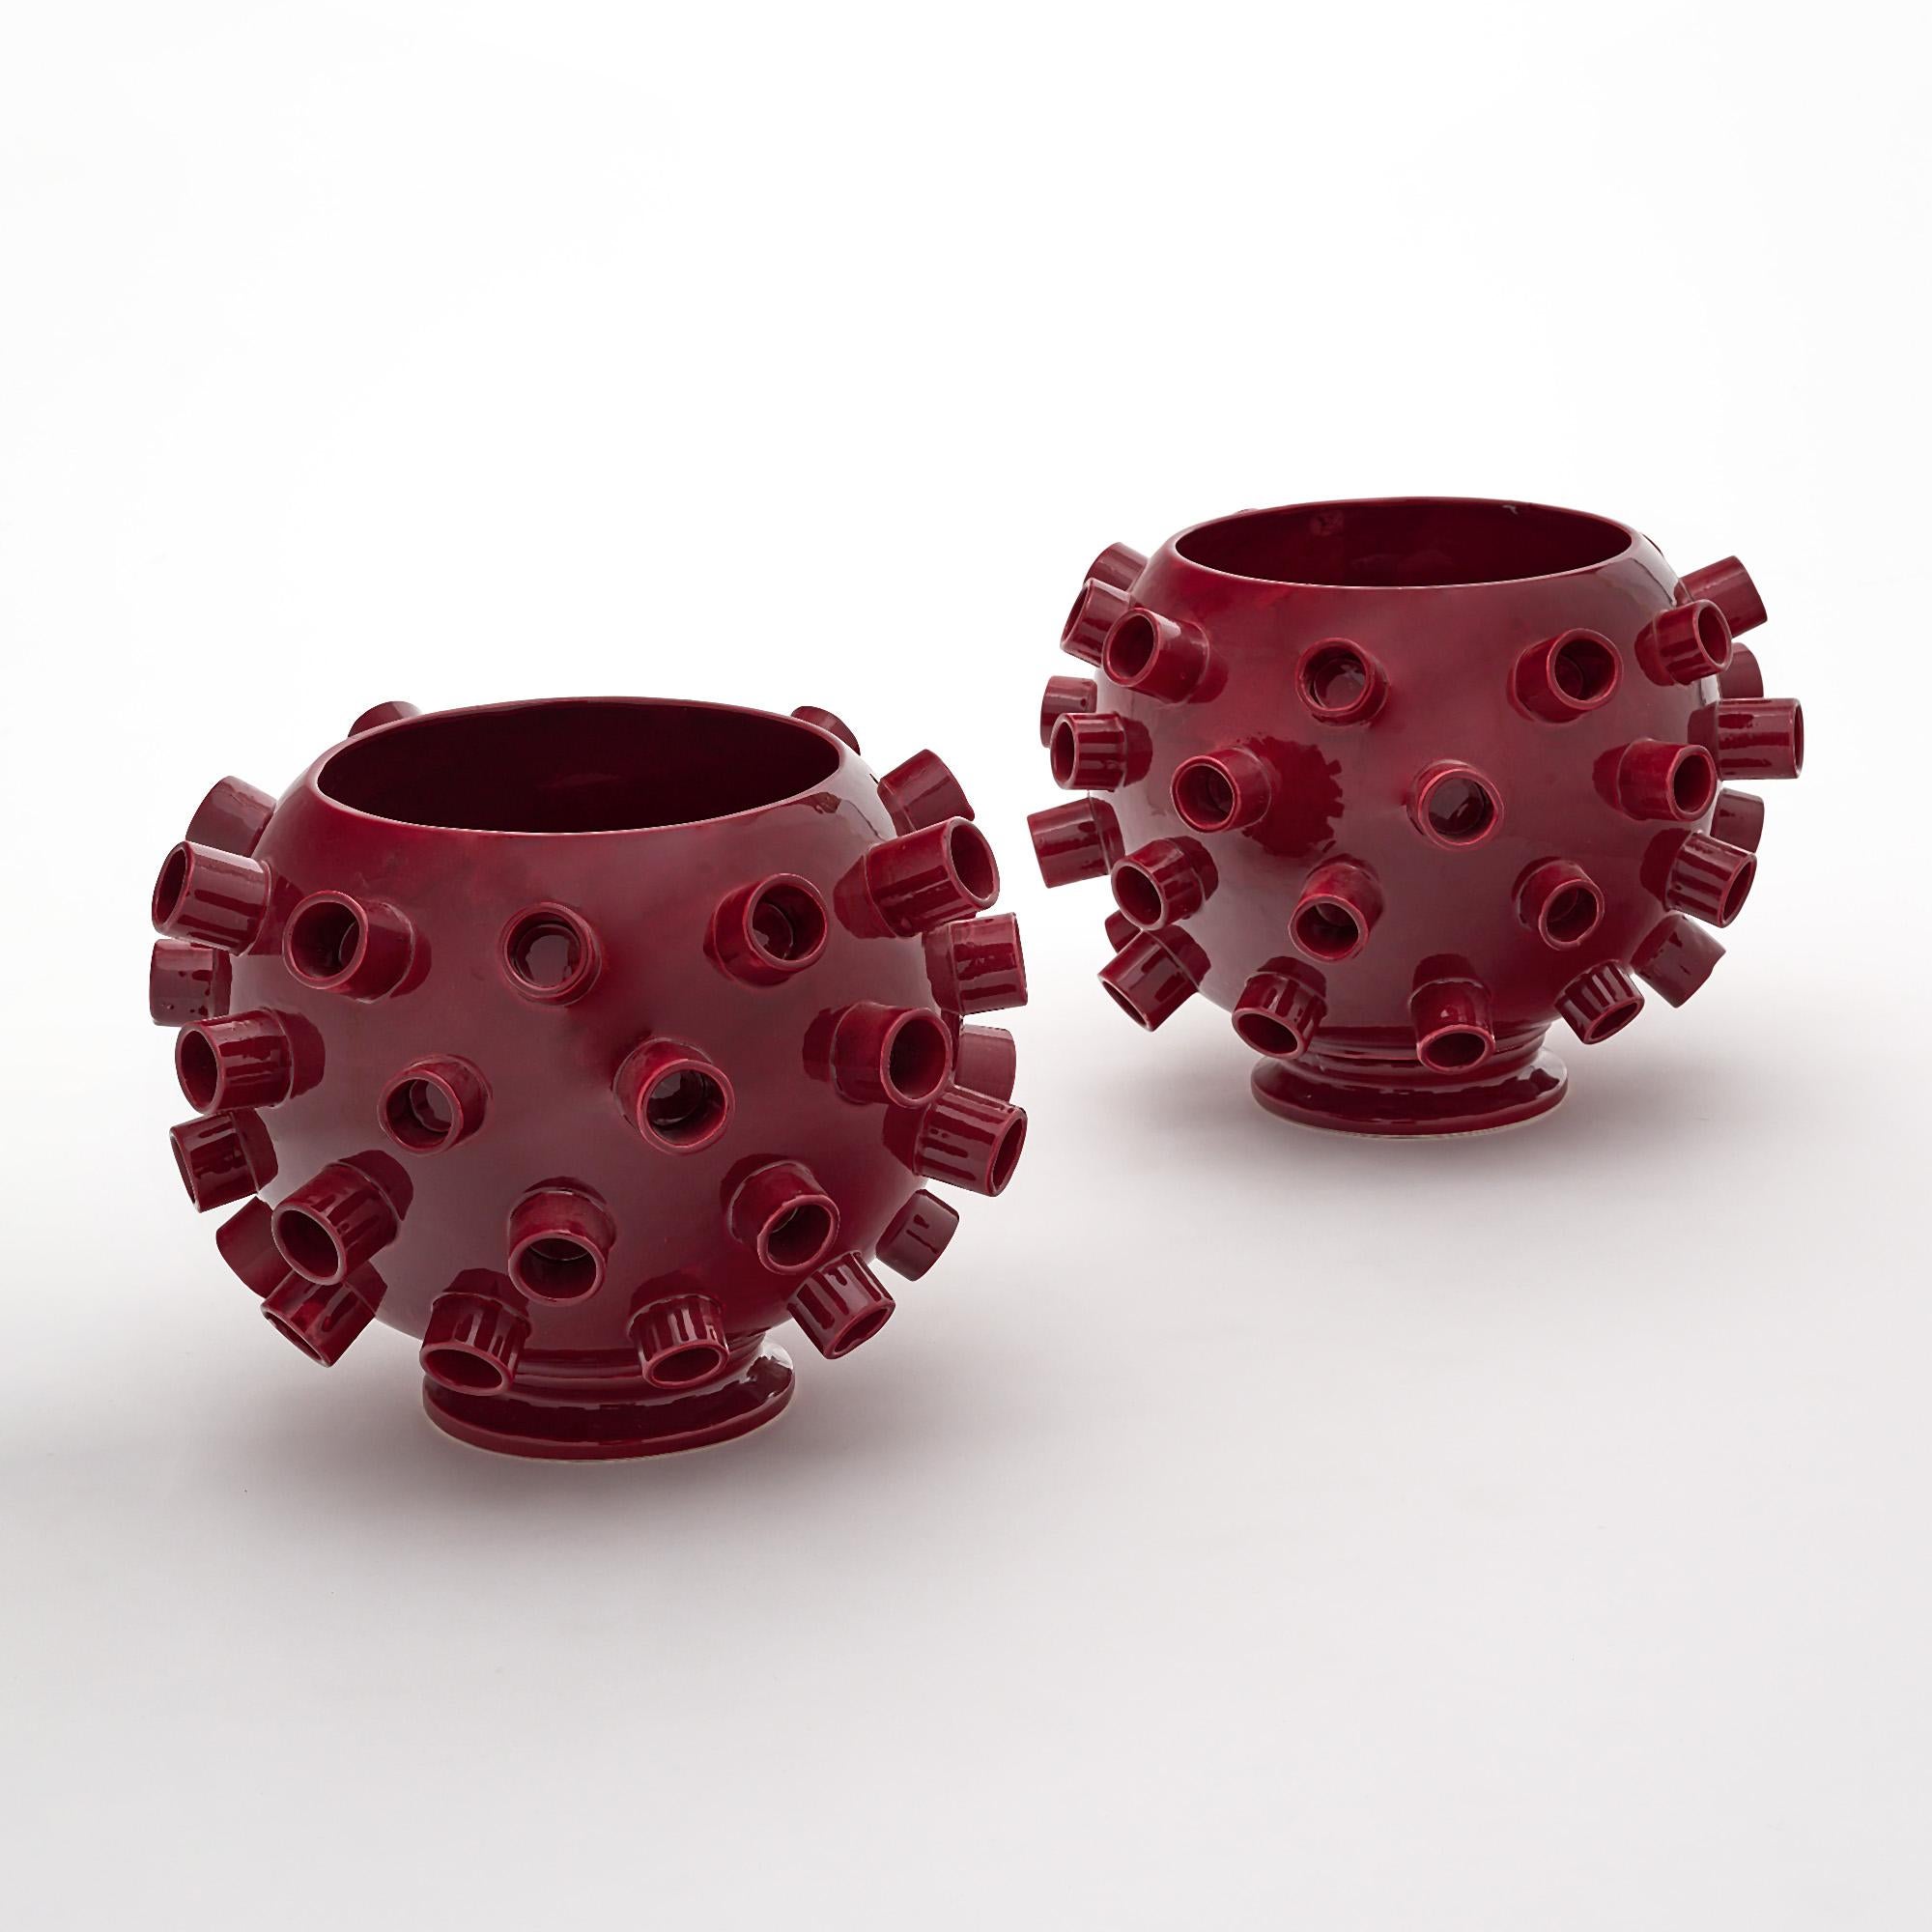 Paar Vasen im brutalistischen Stil aus Verona, Italien. Dieses Paar ist aus Keramik mit einer bordeauxfarbenen, glänzenden Glasur hergestellt. Sie sind als MC für den Künstler M. Costa unterzeichnet.